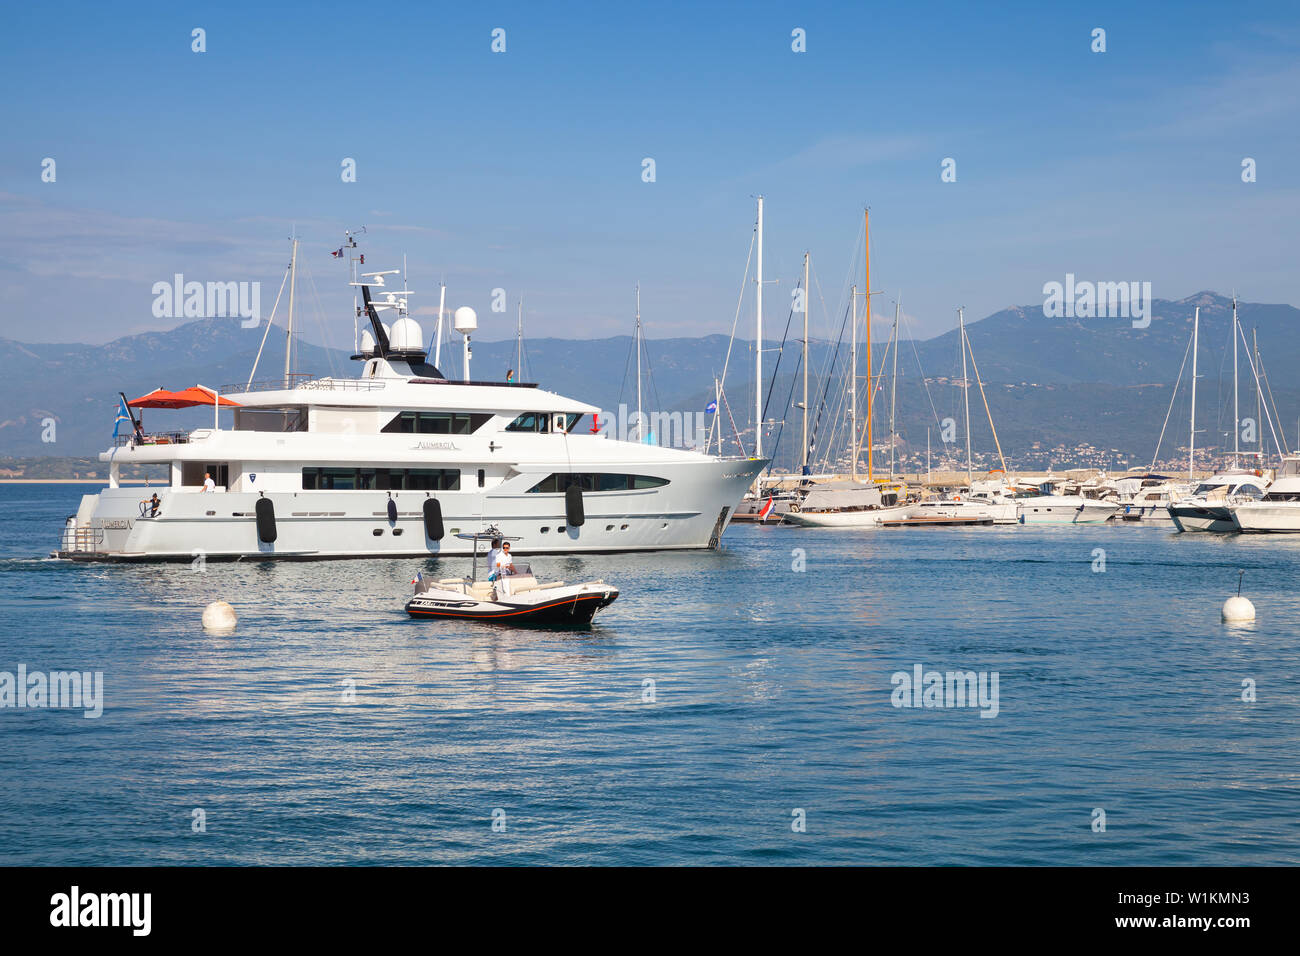 Ajaccio, France - 29 juin 2015 : Blanc yacht de plaisance arrive à port de plaisance de la ville d'Ajaccio, Corse, île de France Banque D'Images